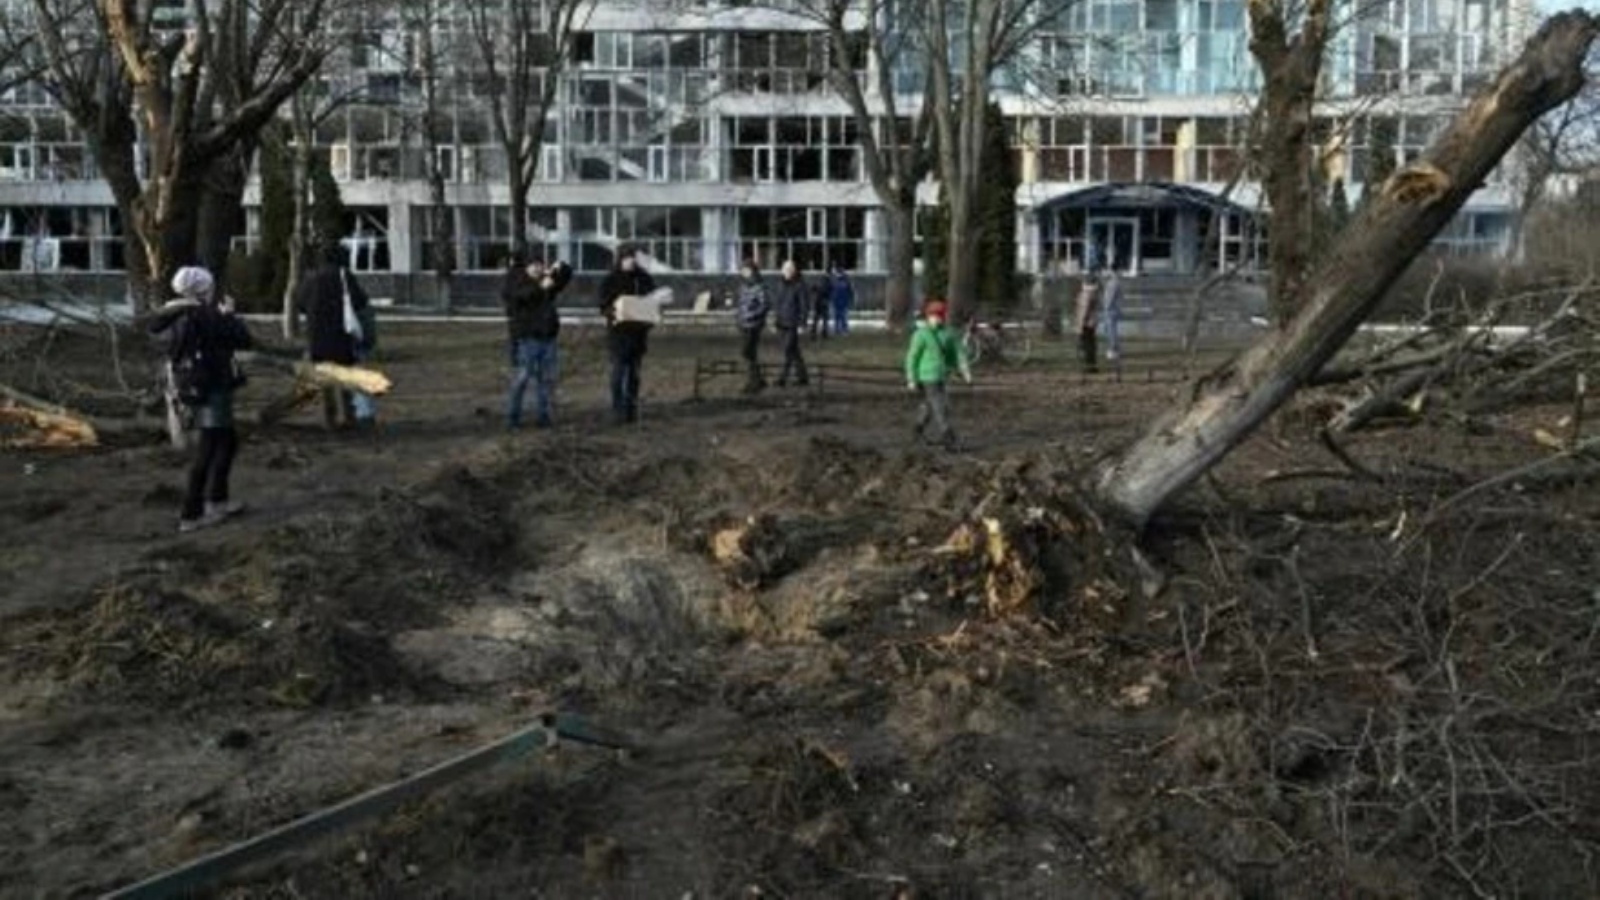  حفرة قرب مبنى تعليمي في كييف أحدثها القصف الصاروخي قبل يوم، في 1 يناير 2023